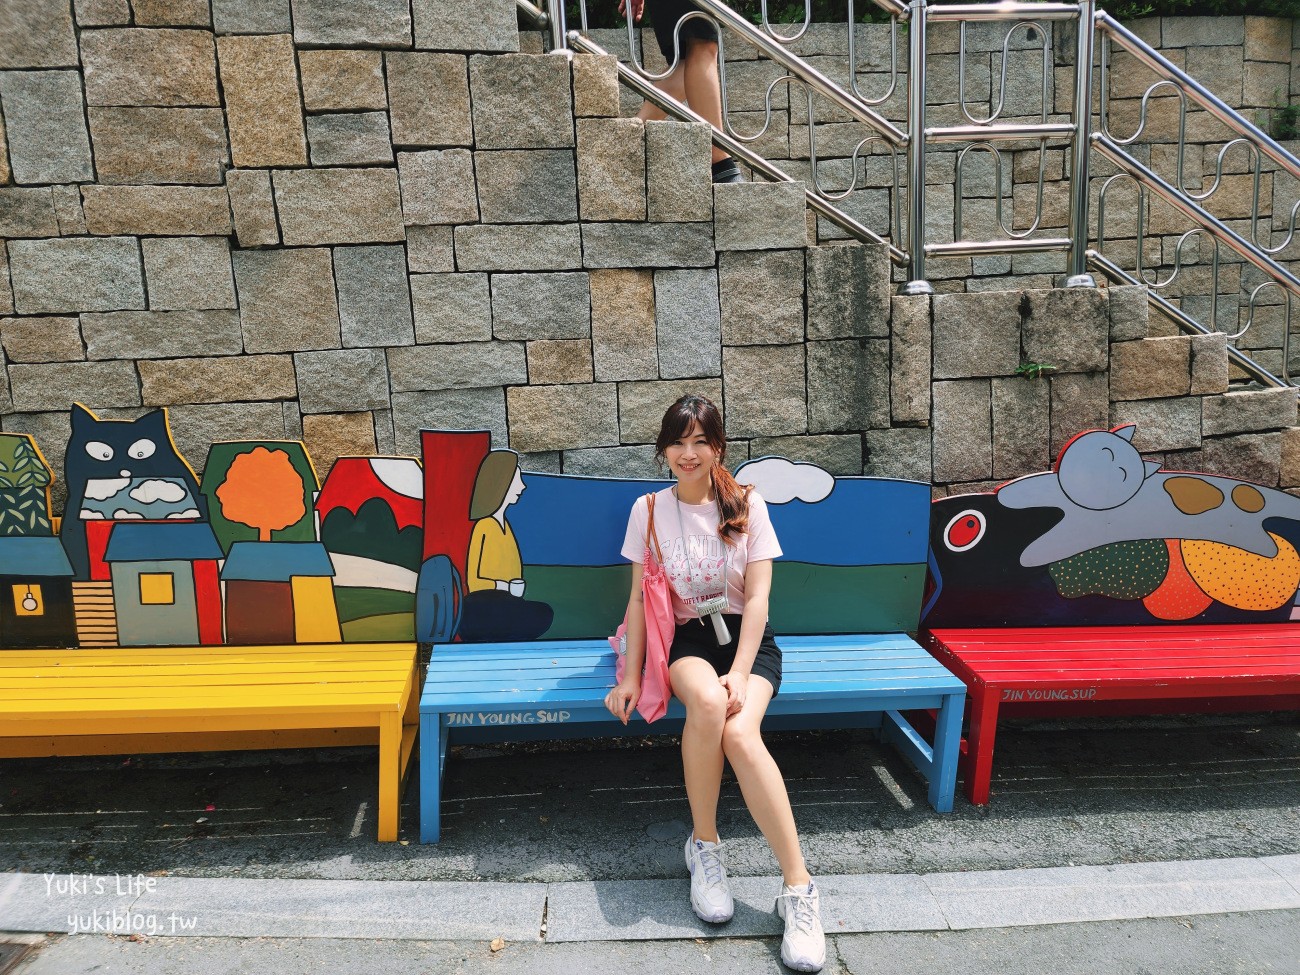 韓國景點》釜山甘川洞文化村，小王子彩繪壁畫村必拍熱點/交通 - yukiblog.tw